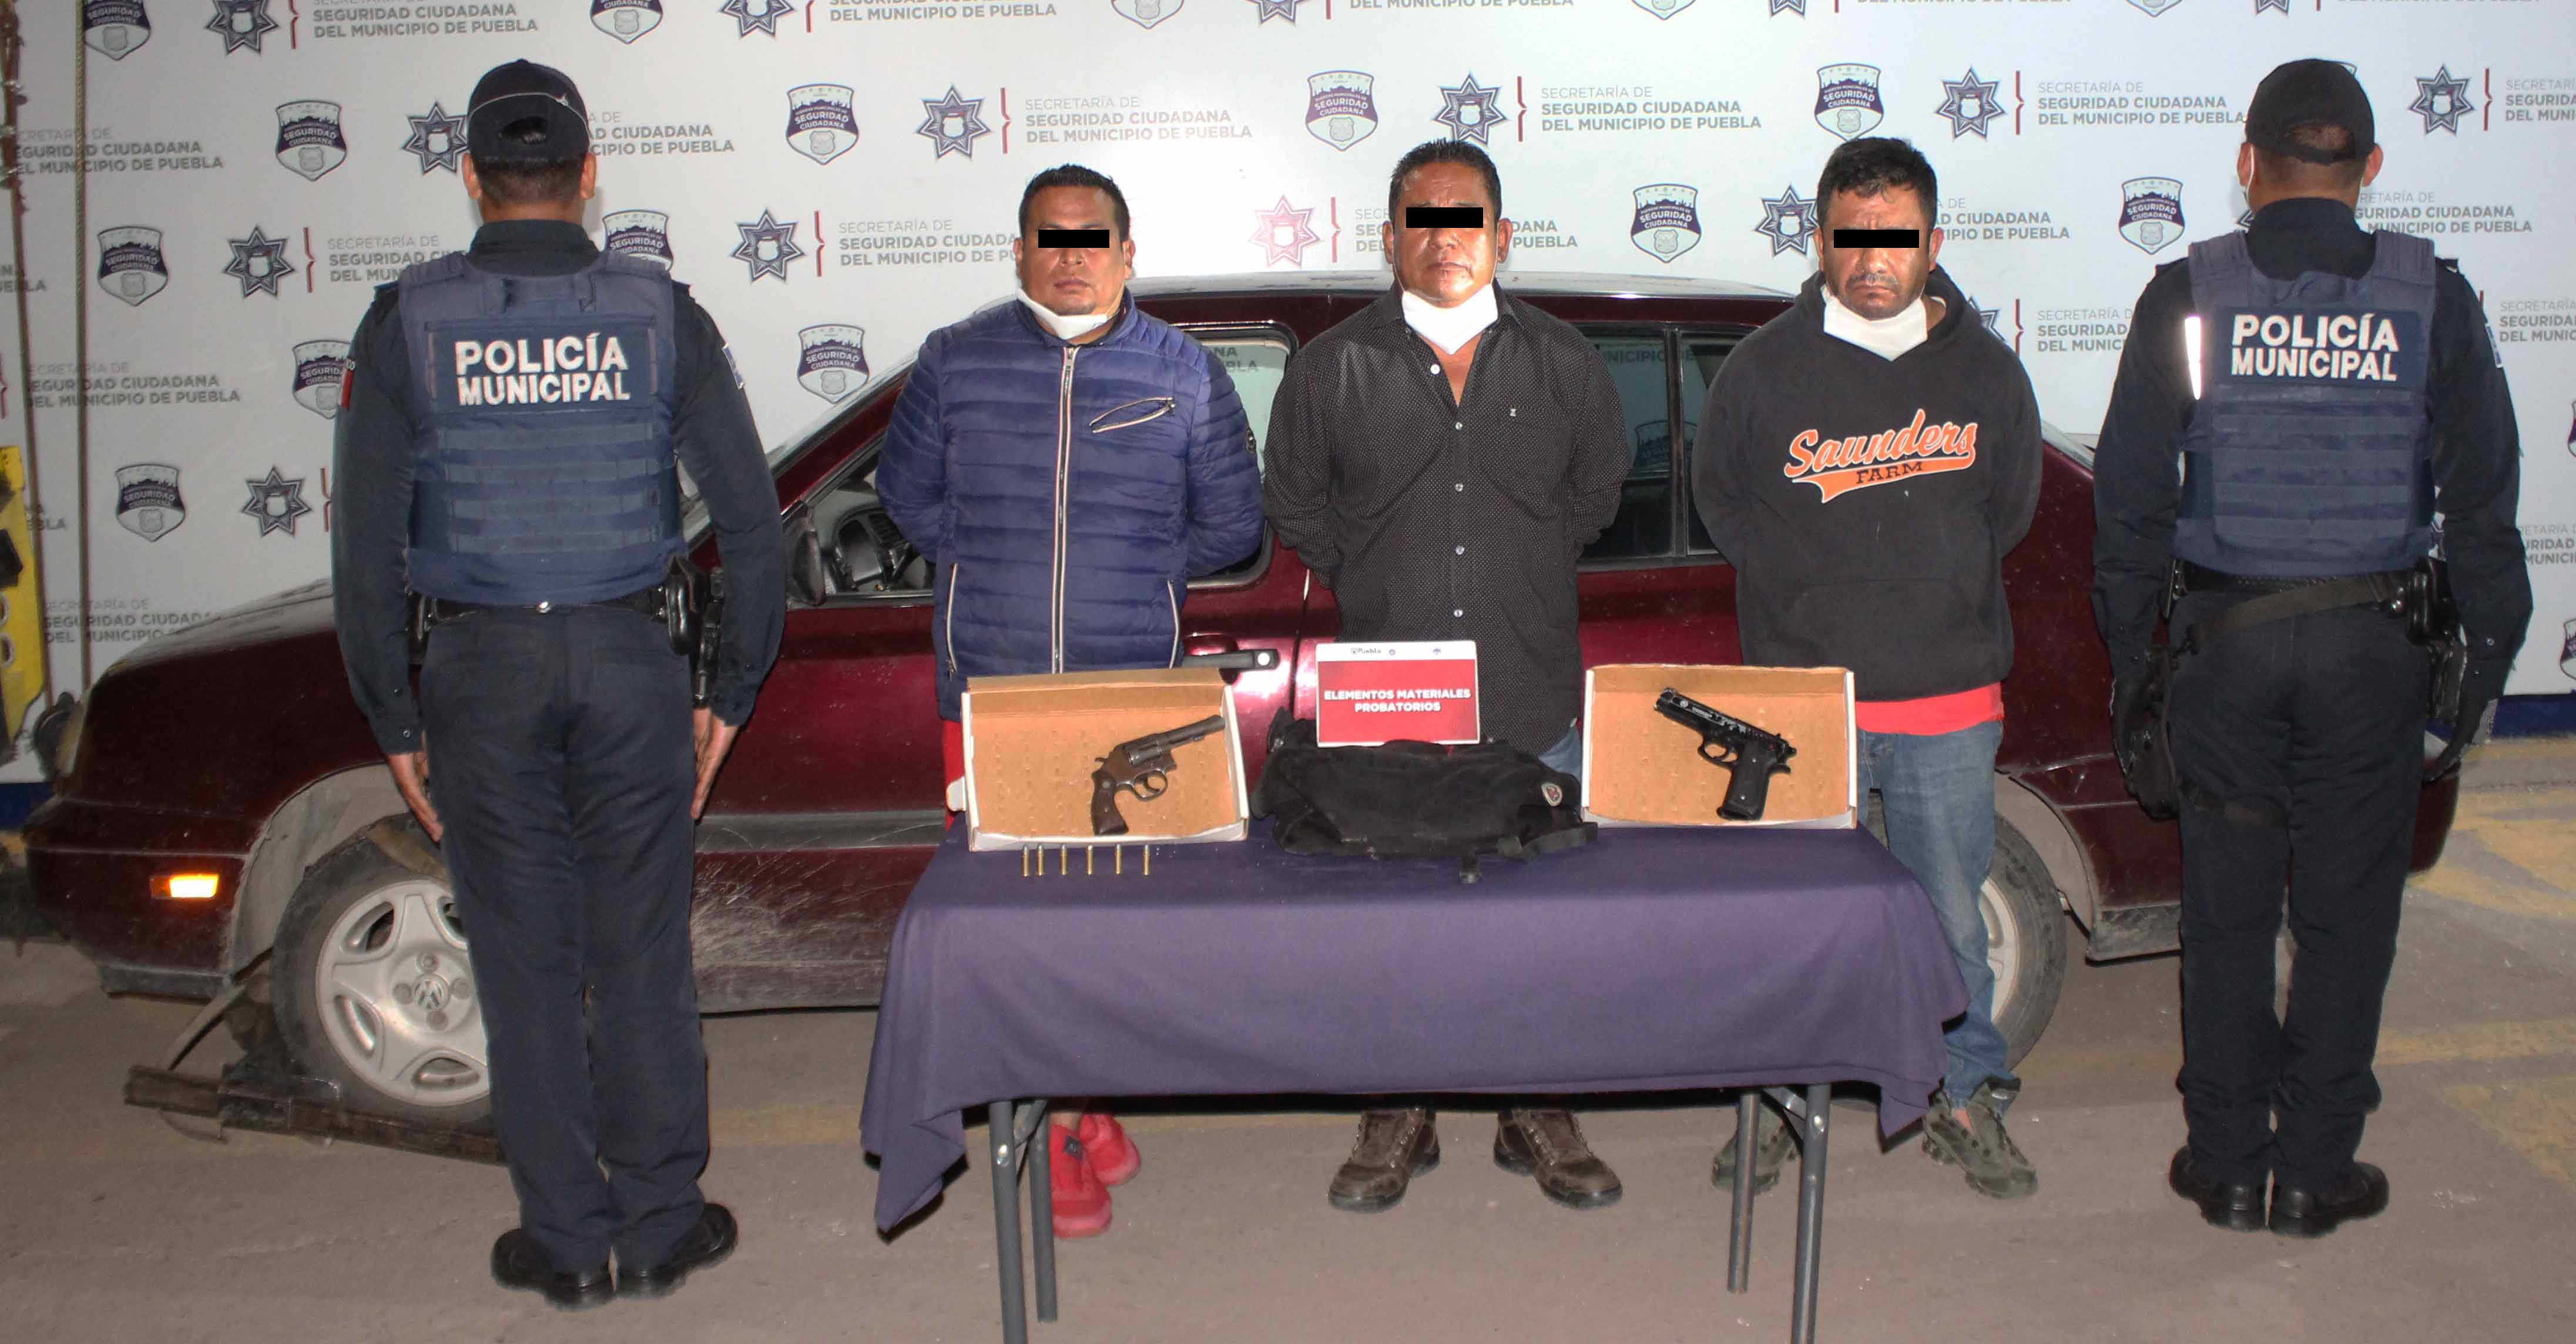 Oportunamente, detuvo Policía Municipal de Puebla a tres hombres en posesión ilegal de un arma de fuego